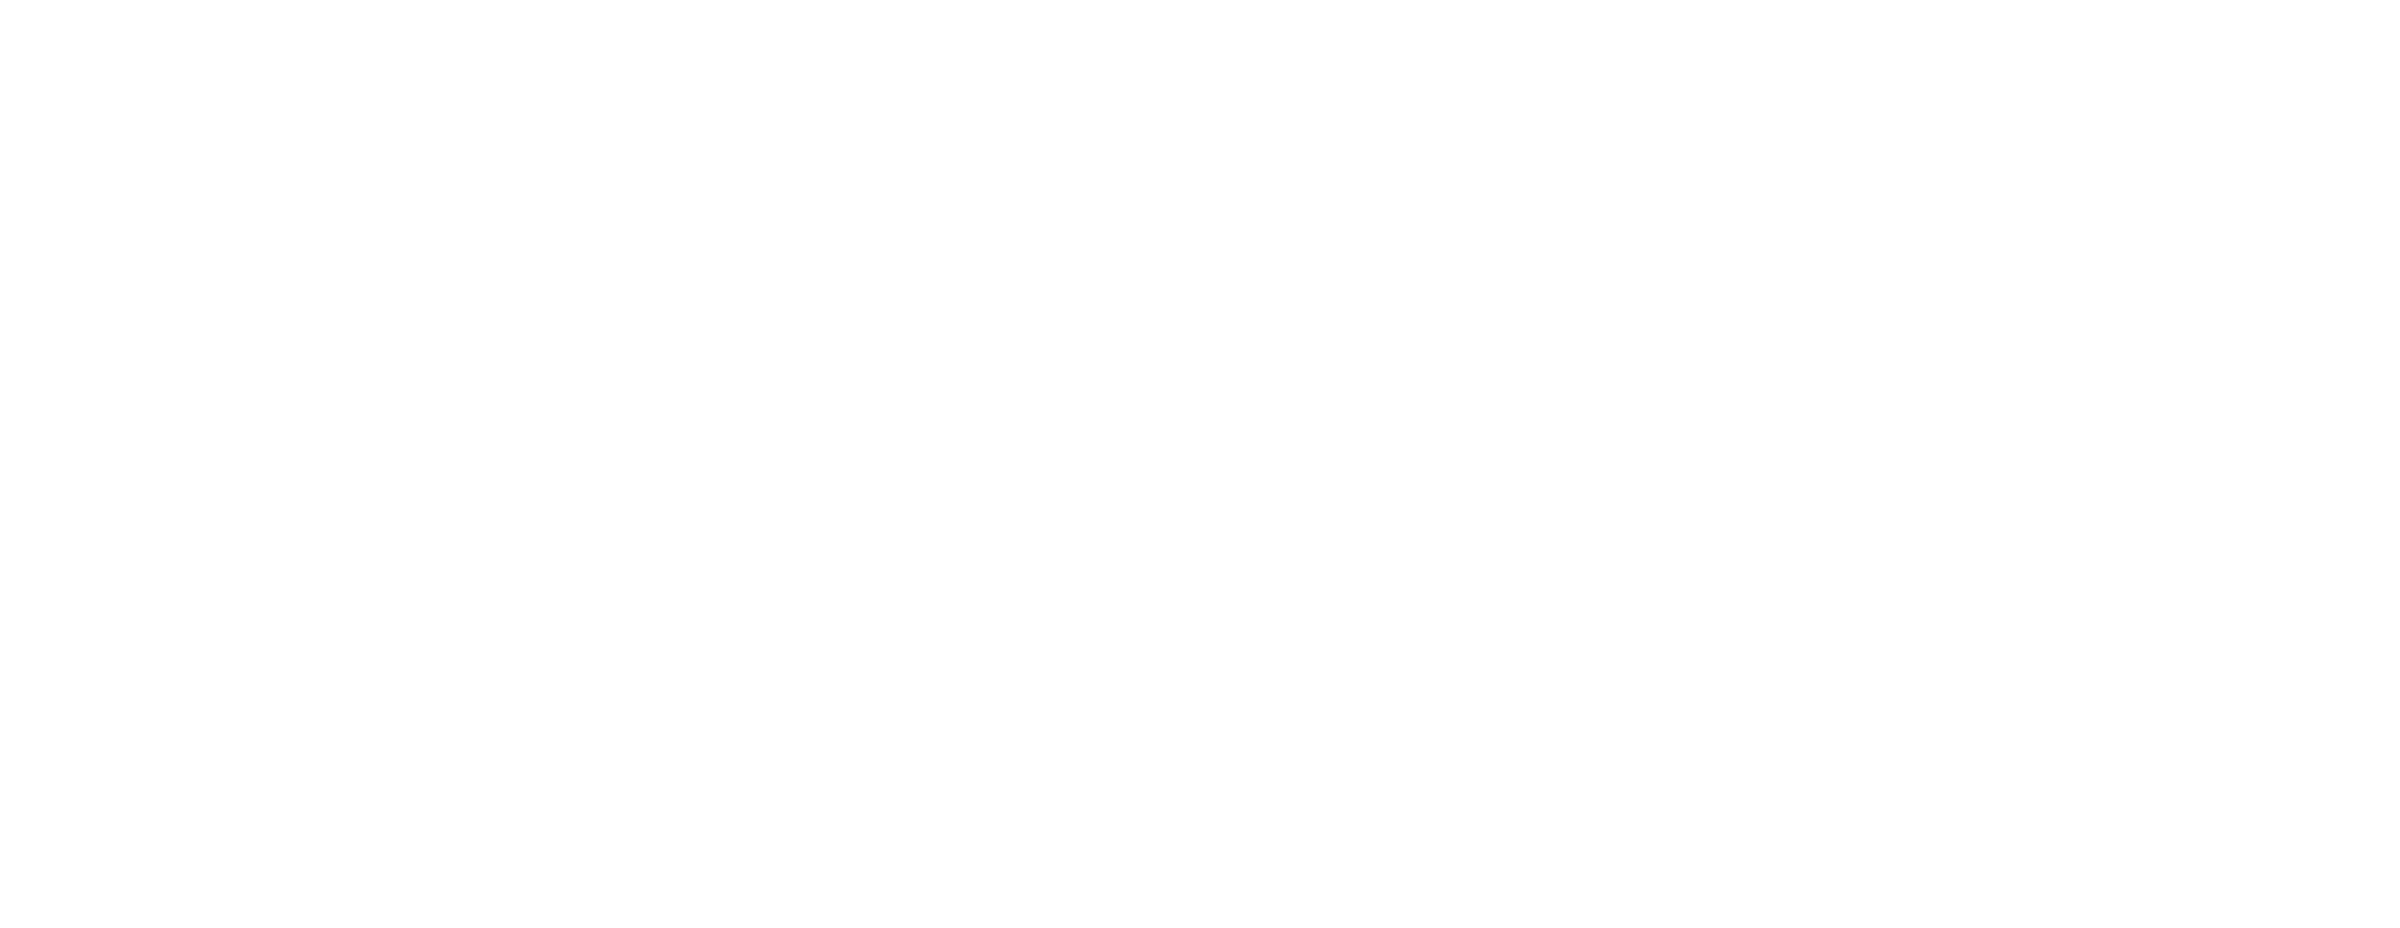 Schlagerfans24 Logo